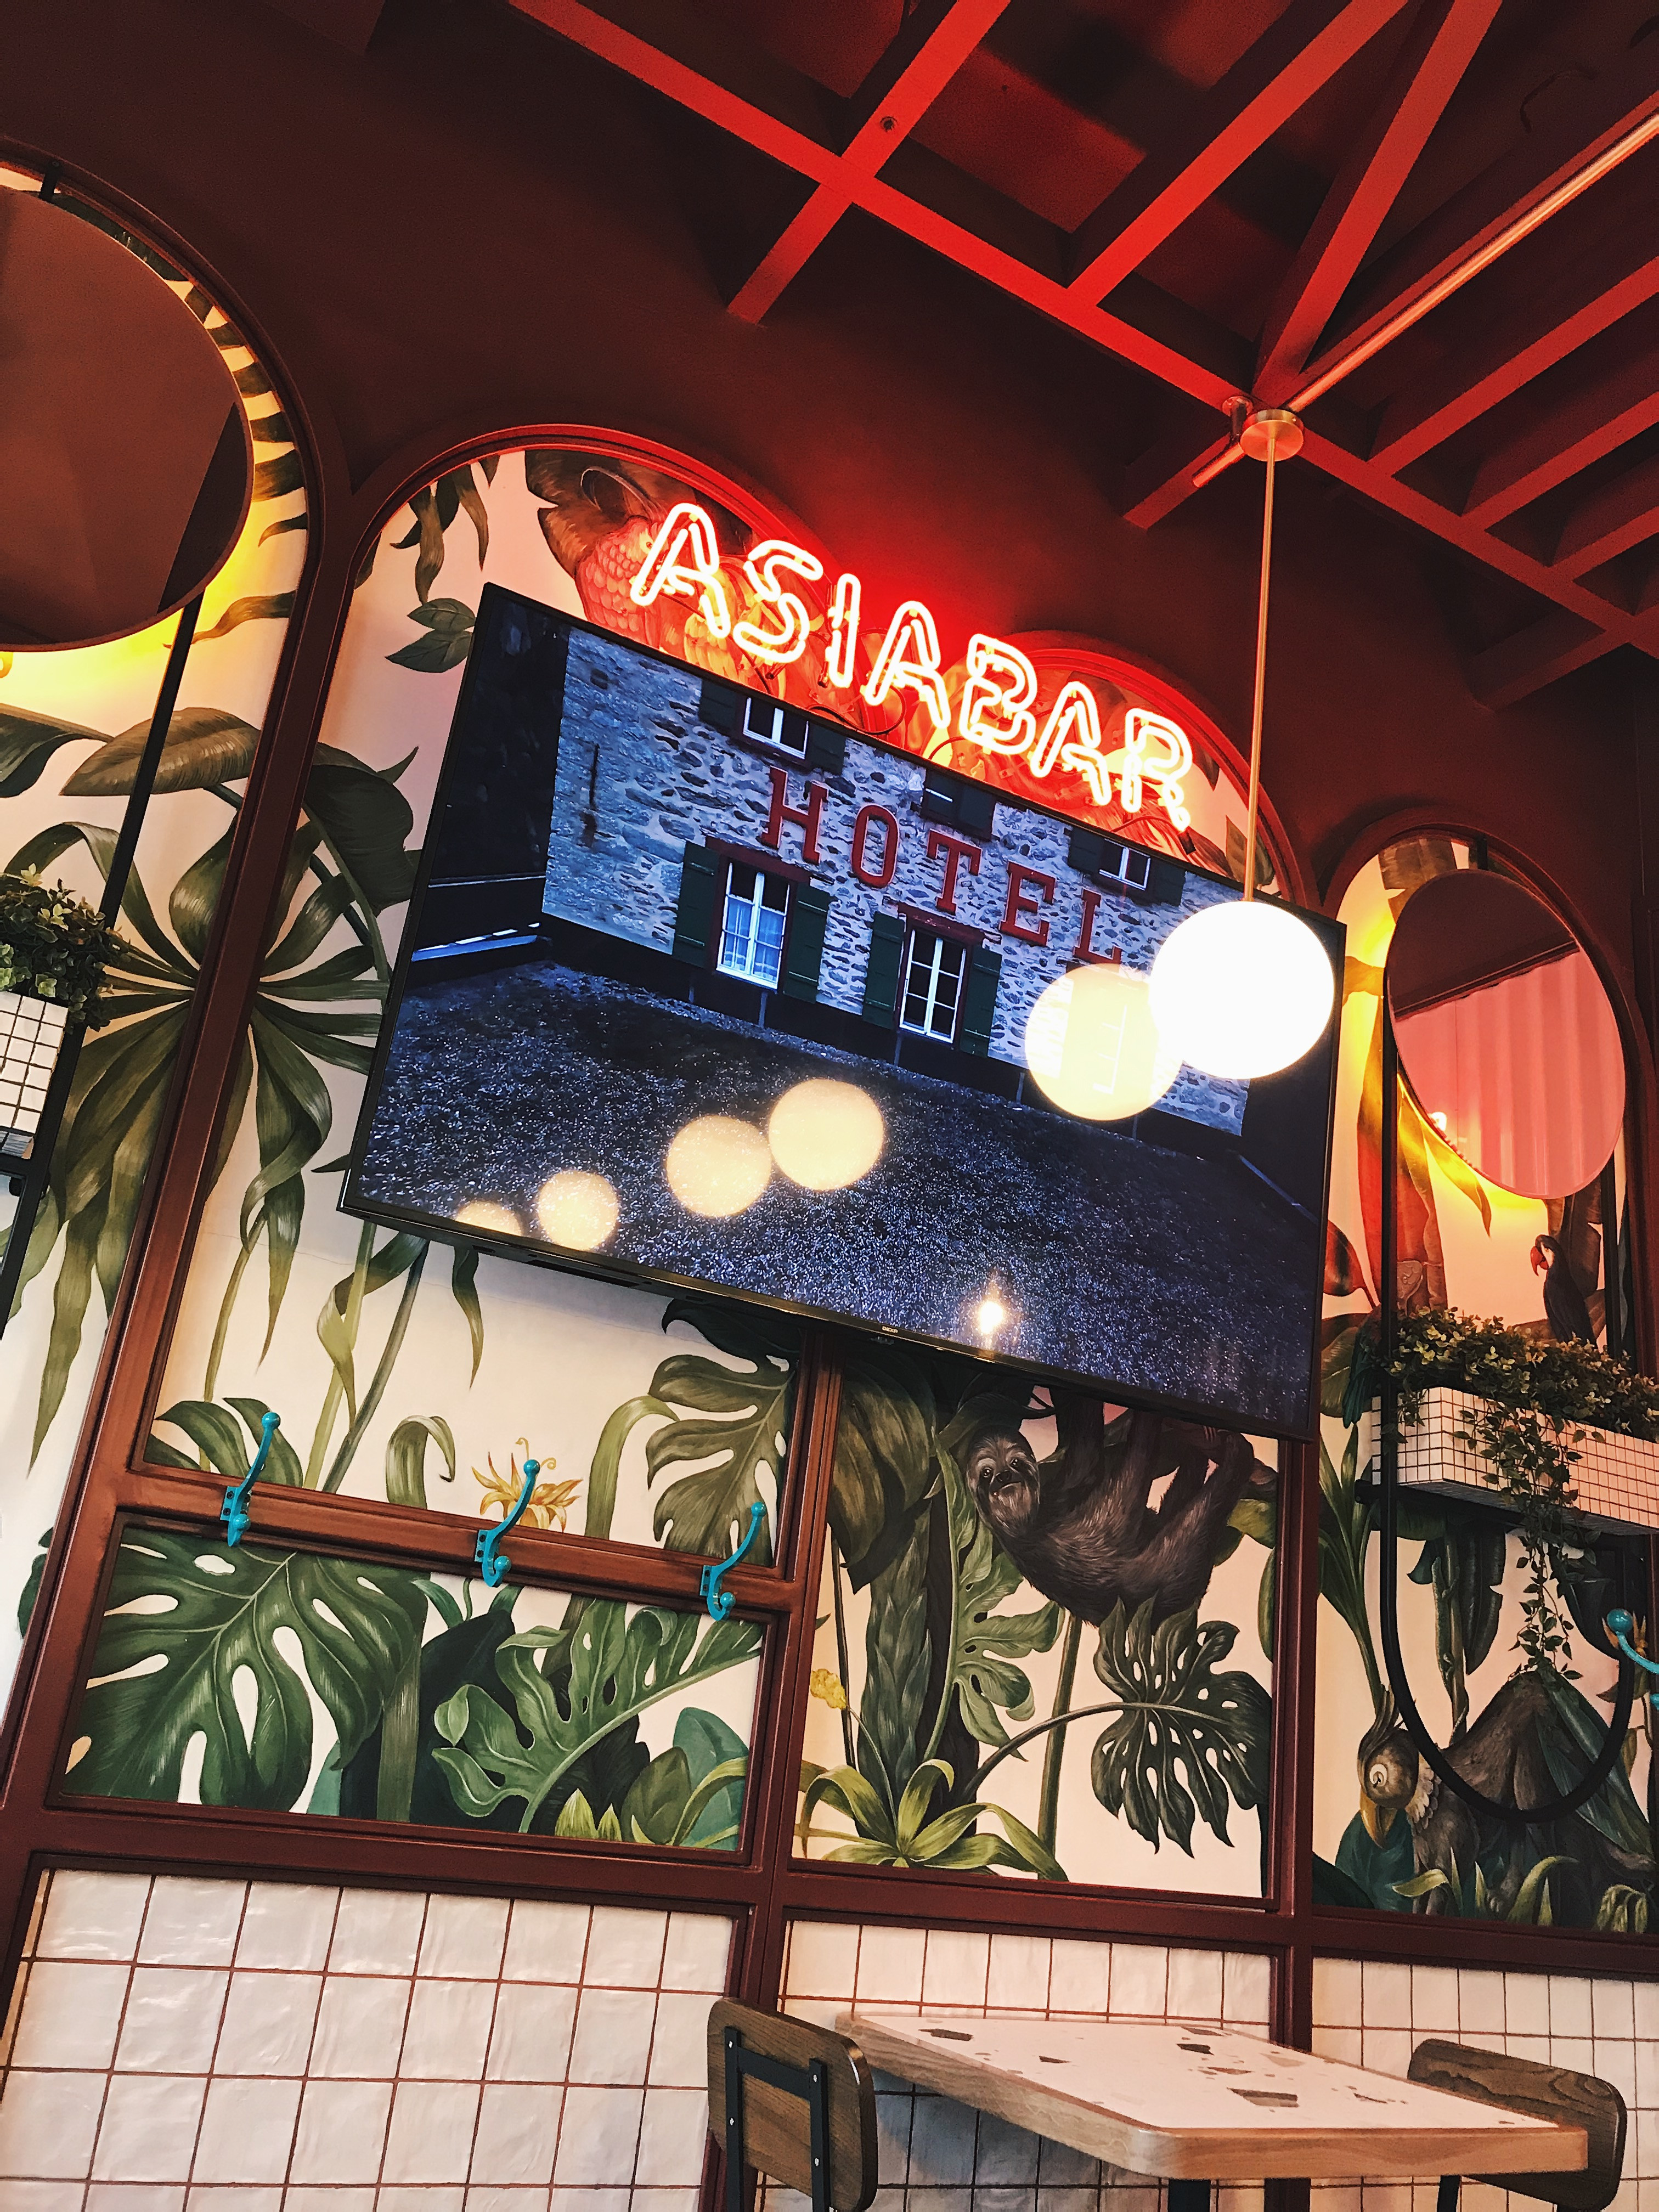 Asia bar